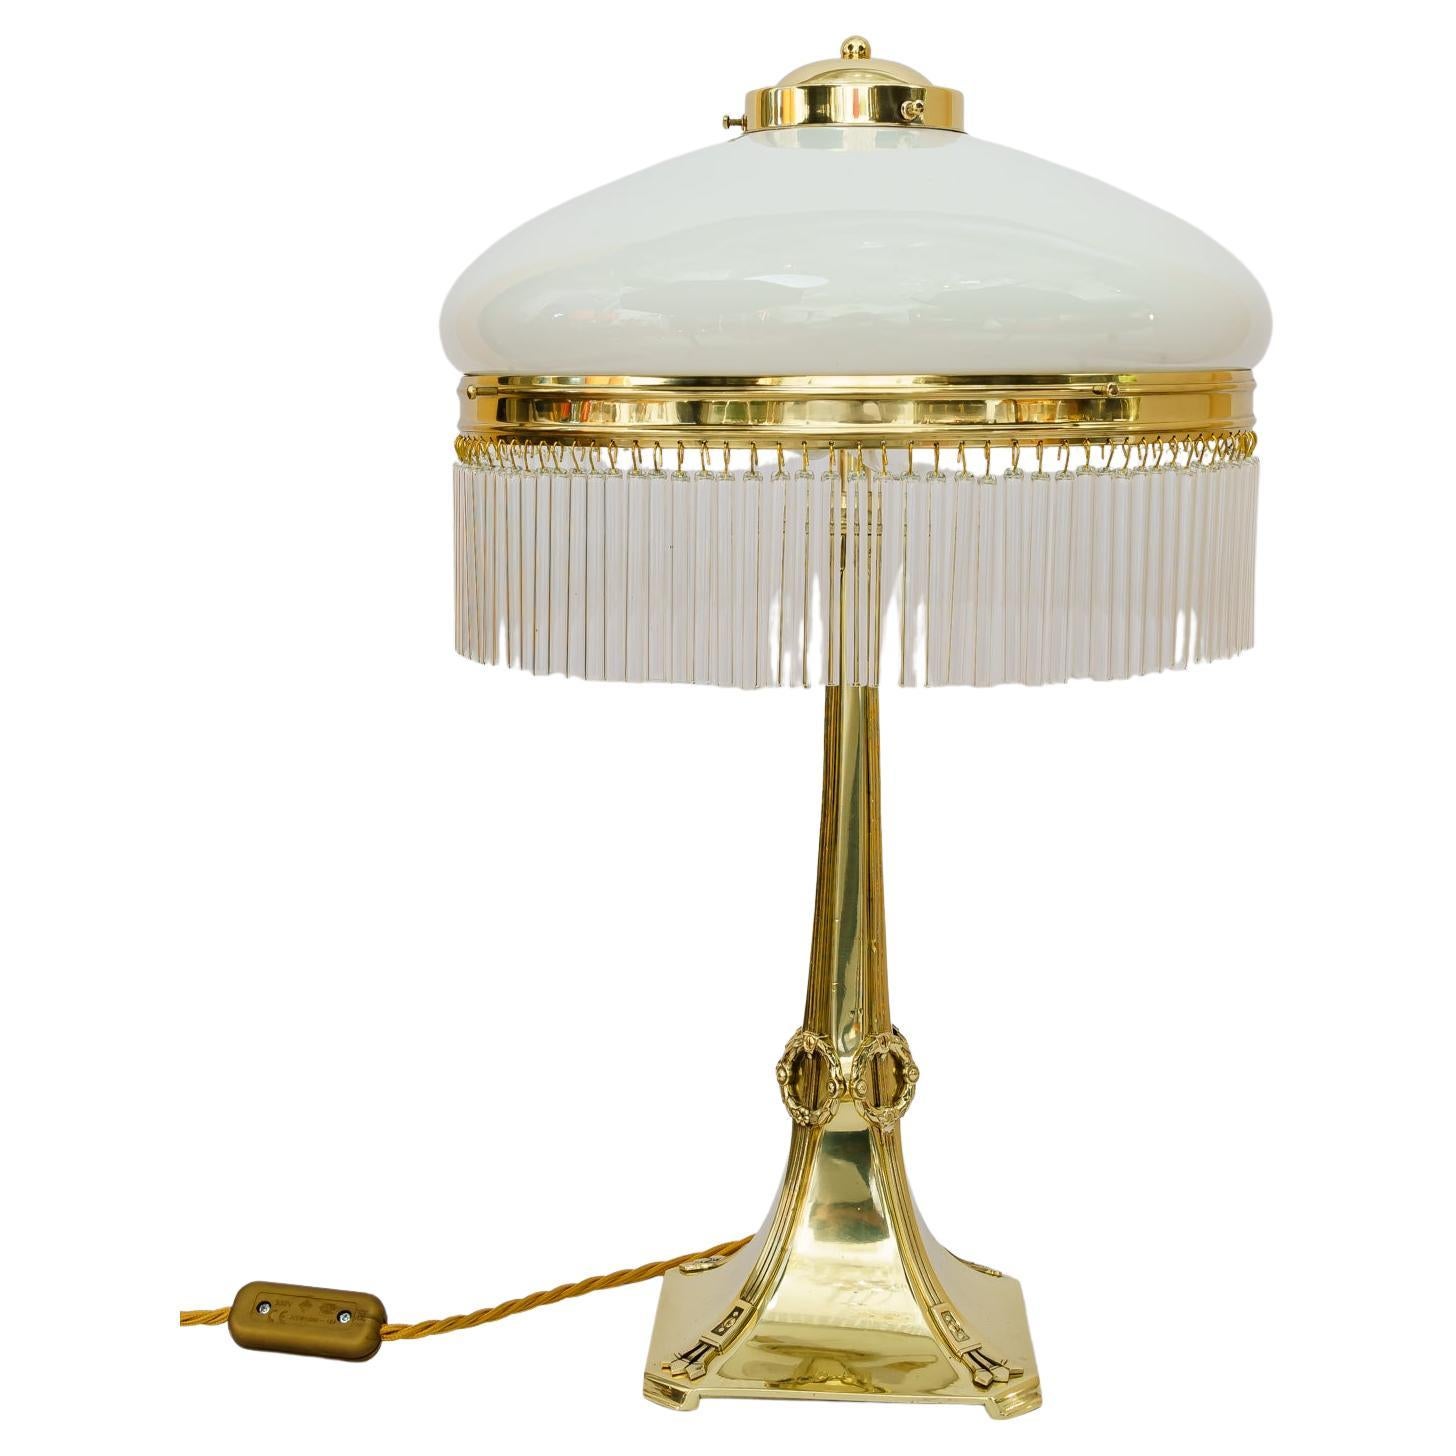 Lampe de table Jugenstil Vienne vers 1910.
Laiton poli et émaillé au four.
Abat-jour en verre opale.
Les baguettes en verre sont remplacées (nouvelles).